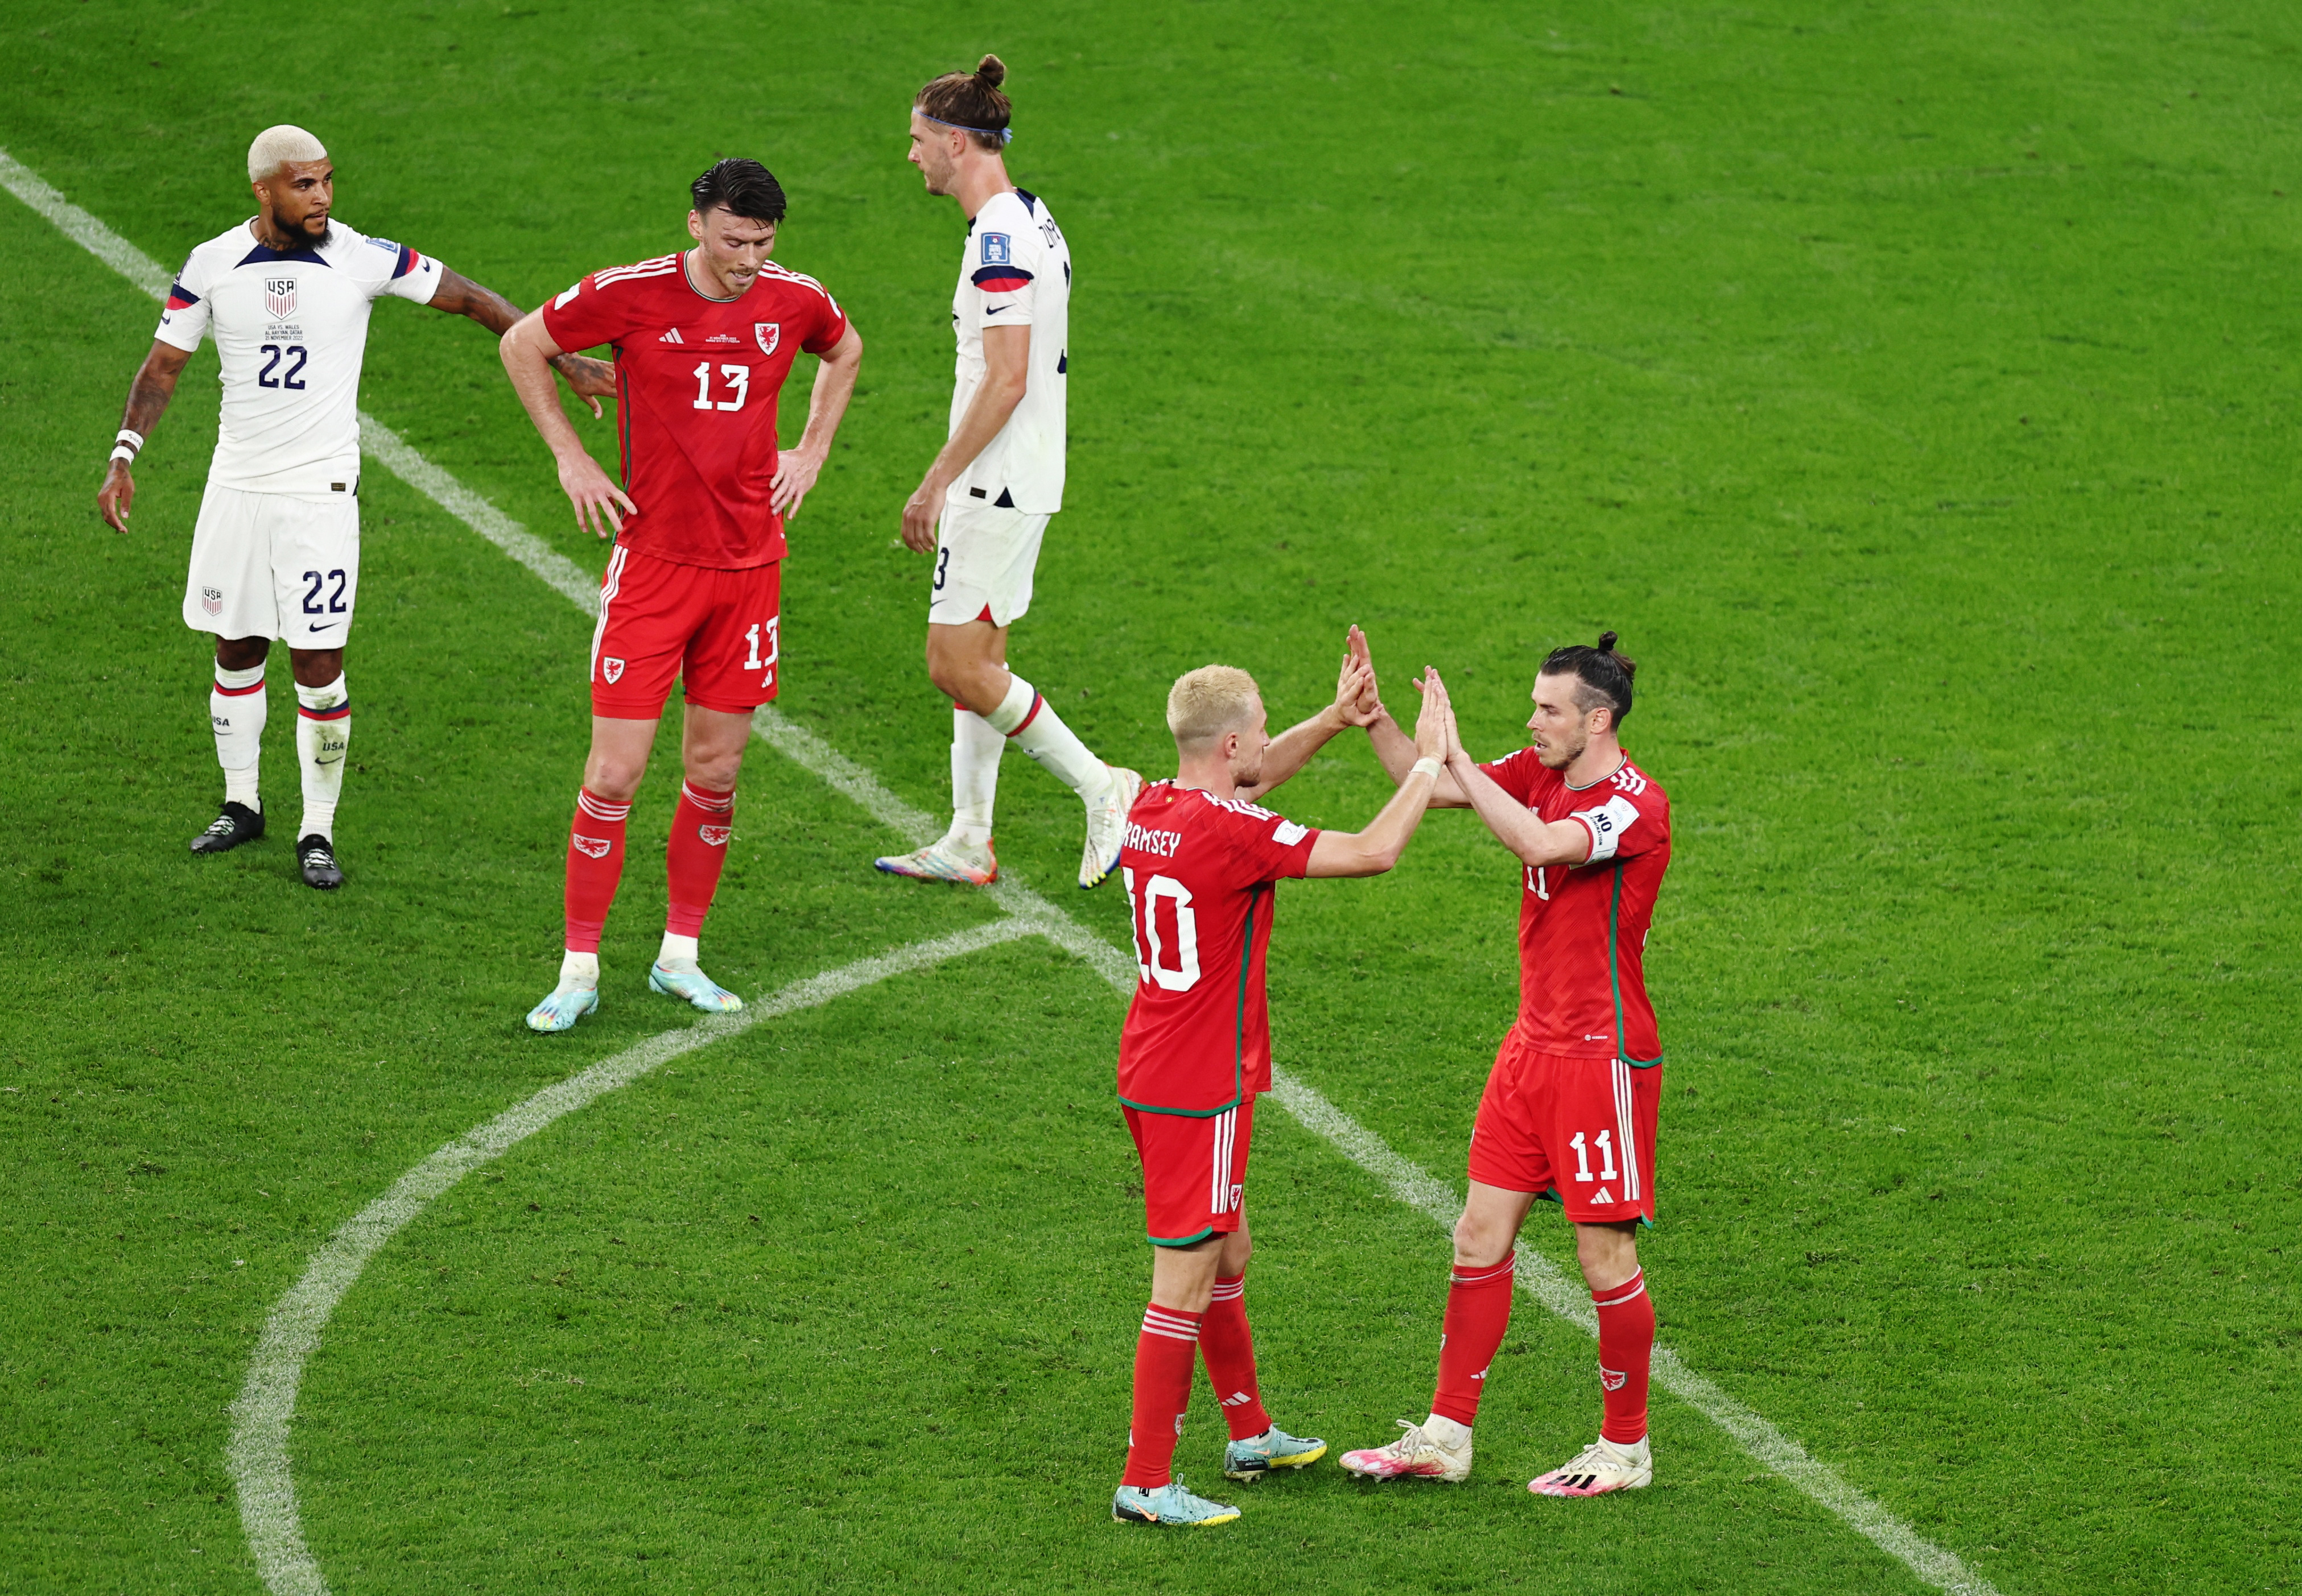 Estados Unidos y Gales empataron tras un intenso partido, Weah y Bale fueron los anotadores